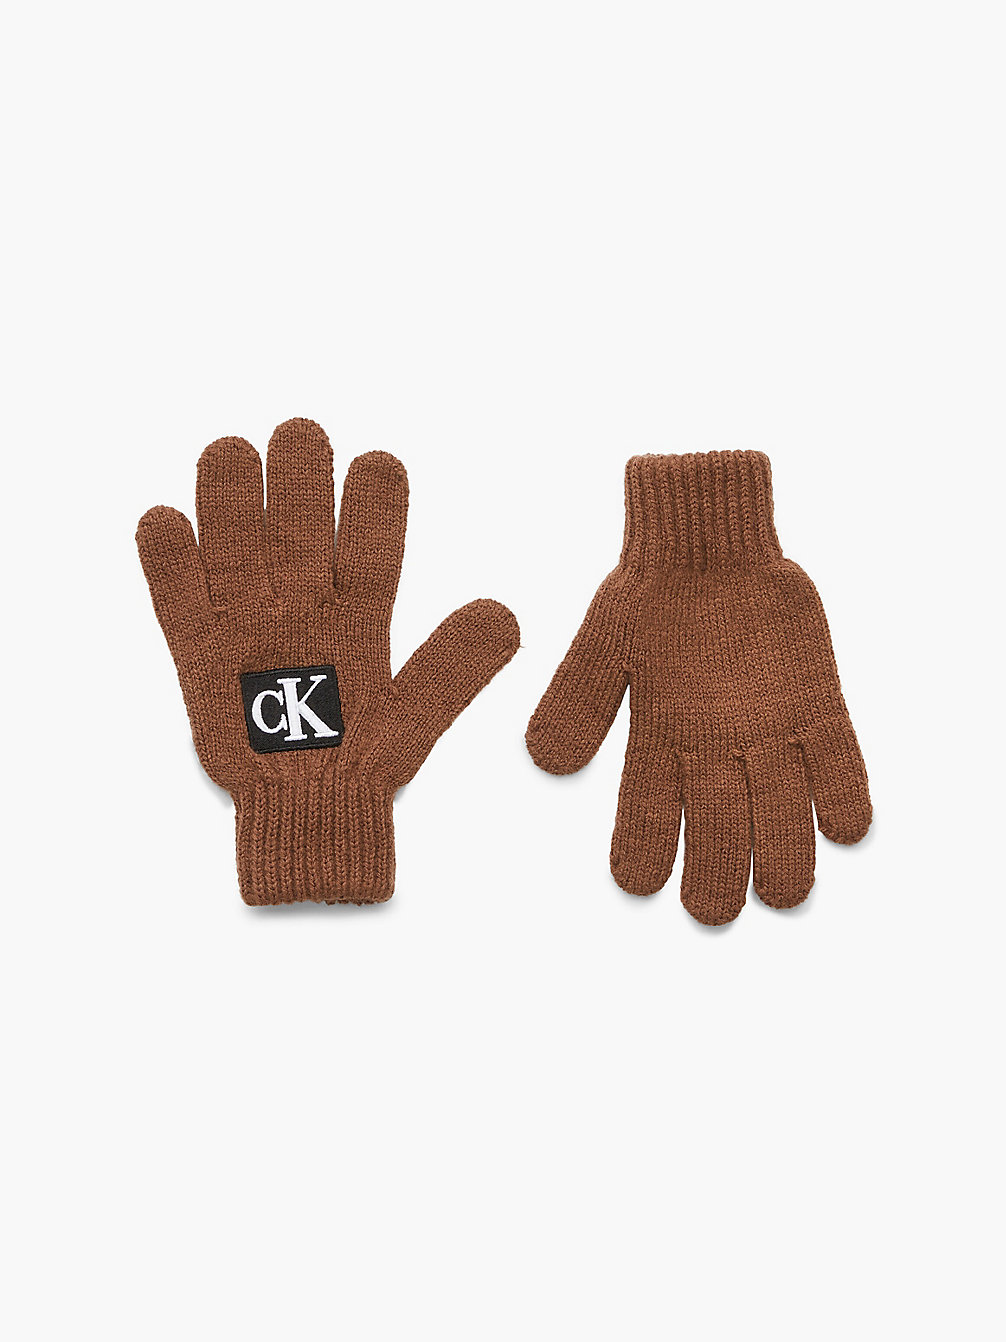 MILK CHOCOLATE Unisex-Logo-Handschuhe undefined kids unisex Calvin Klein